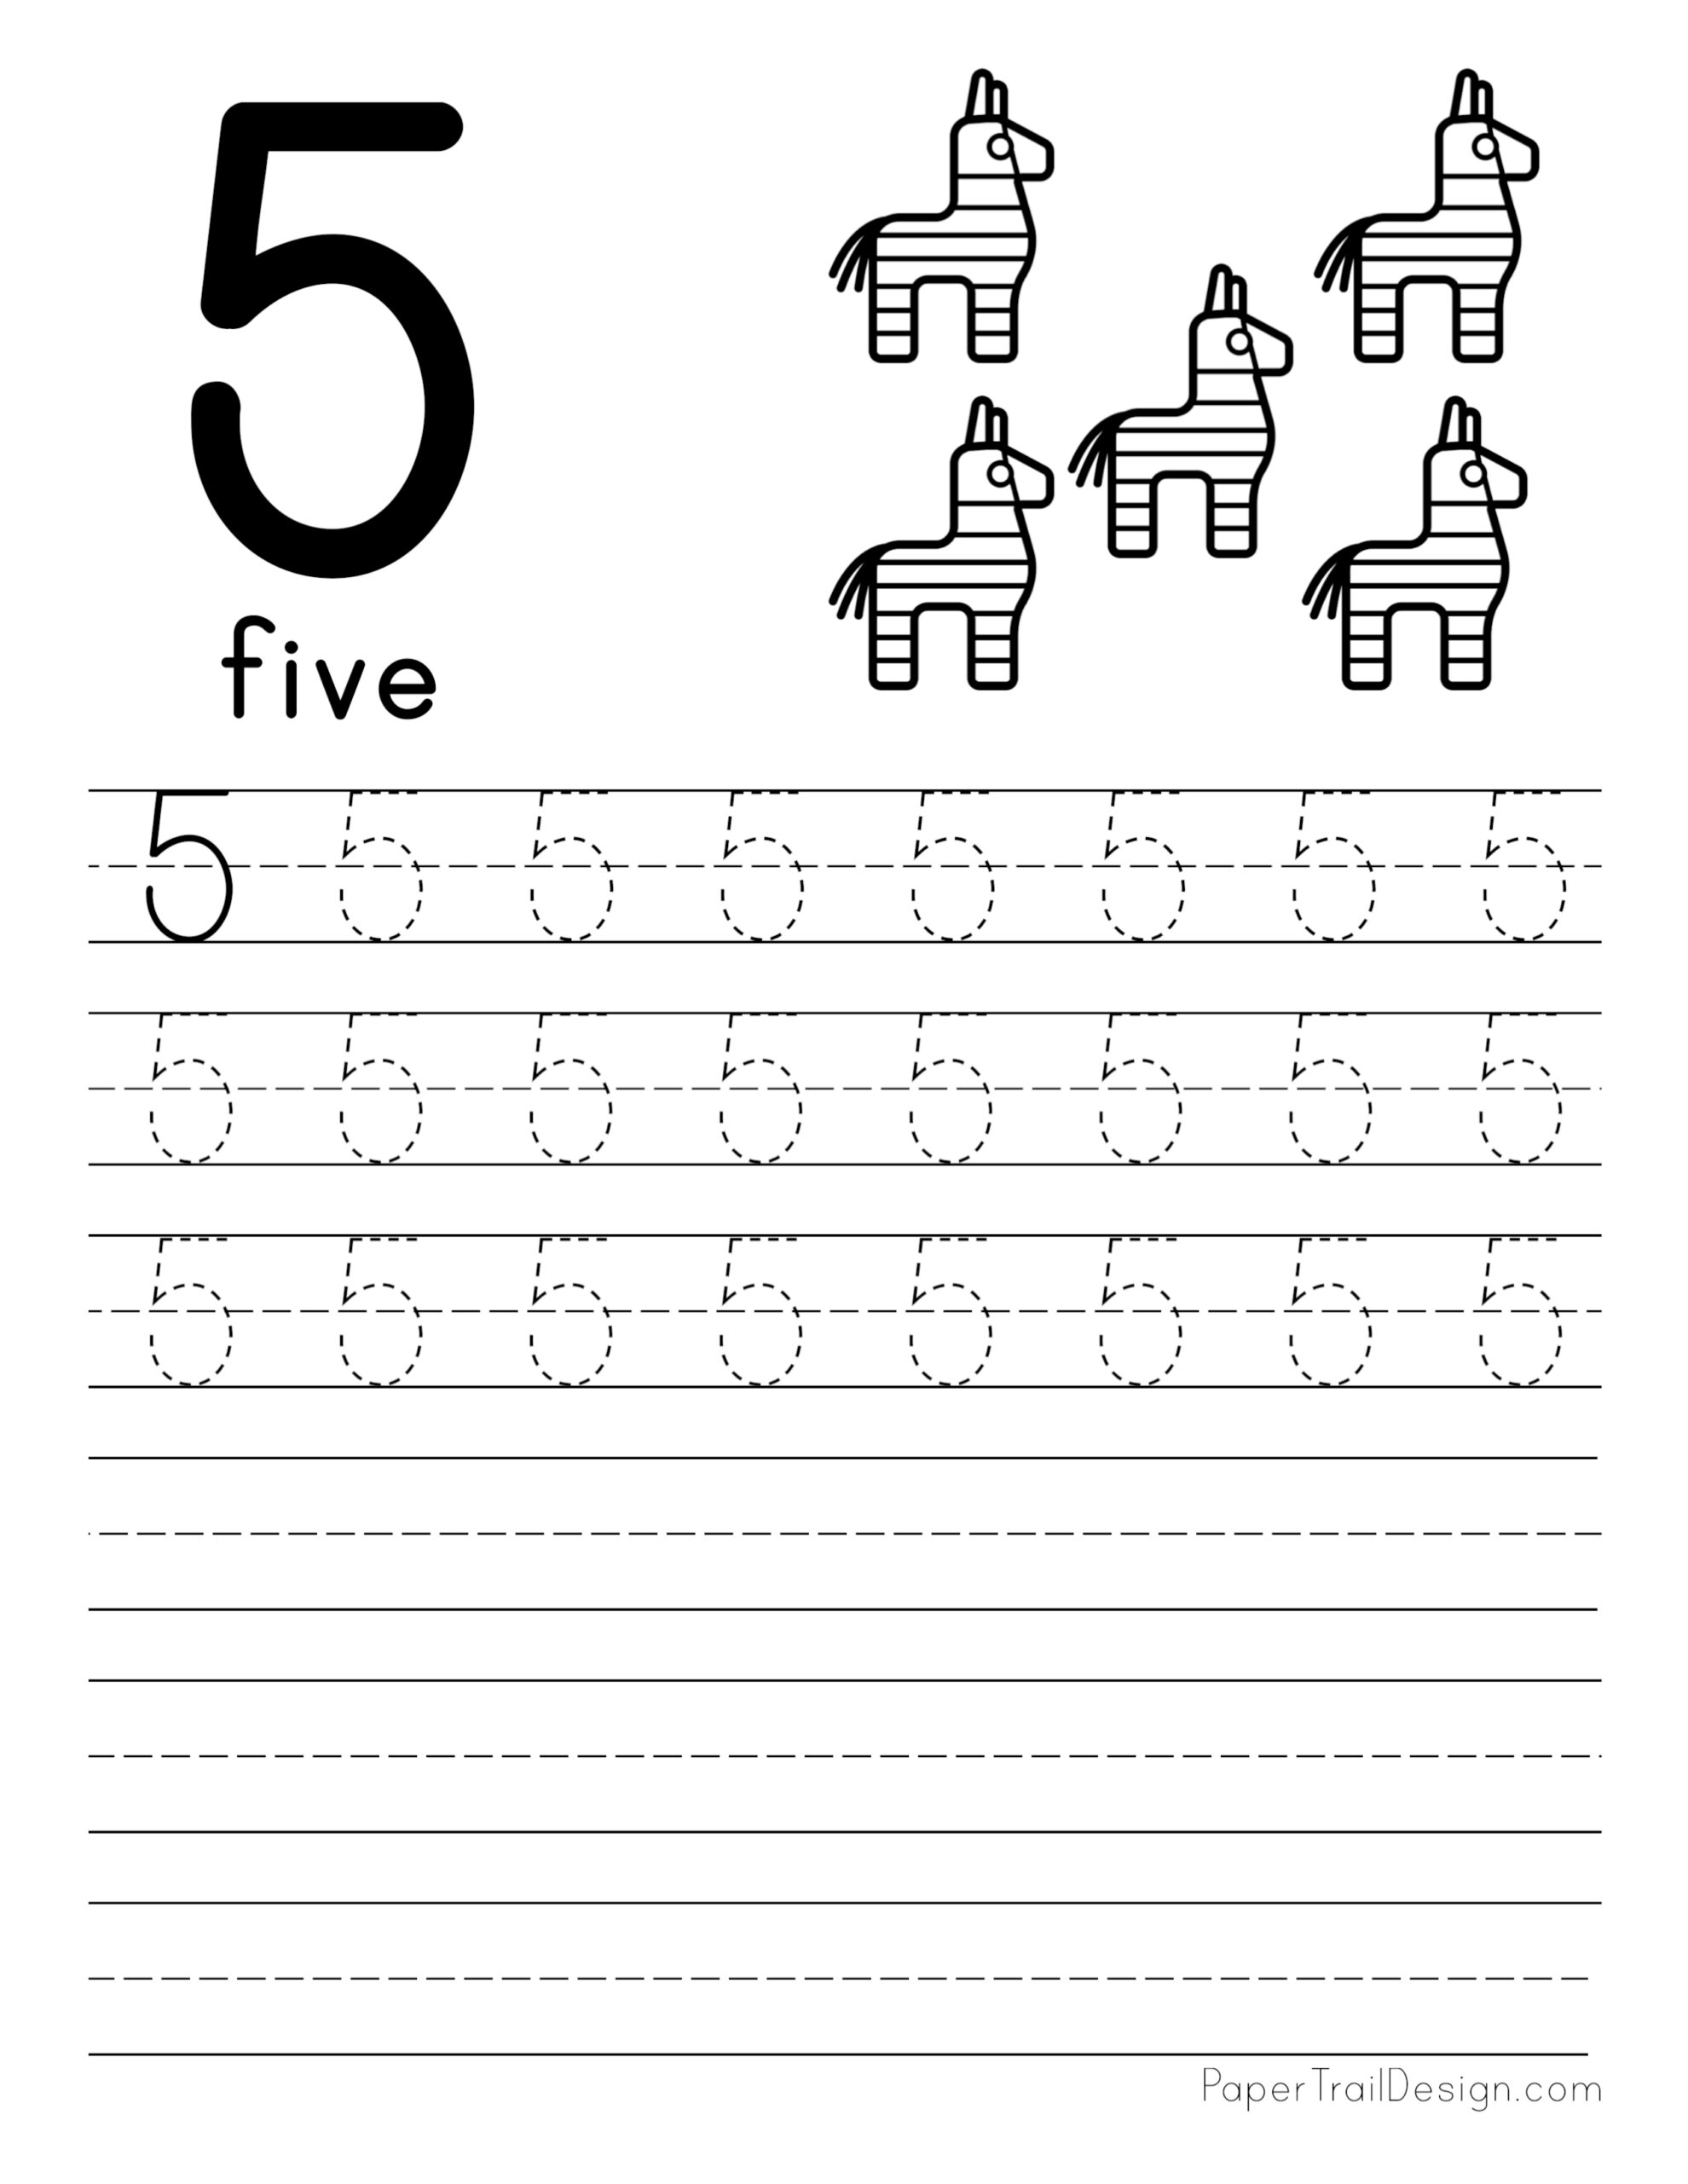 number-4-trace-worksheet-for-kids-worksheets-for-kids-tracing-worksheets-kindergarten-worksheets